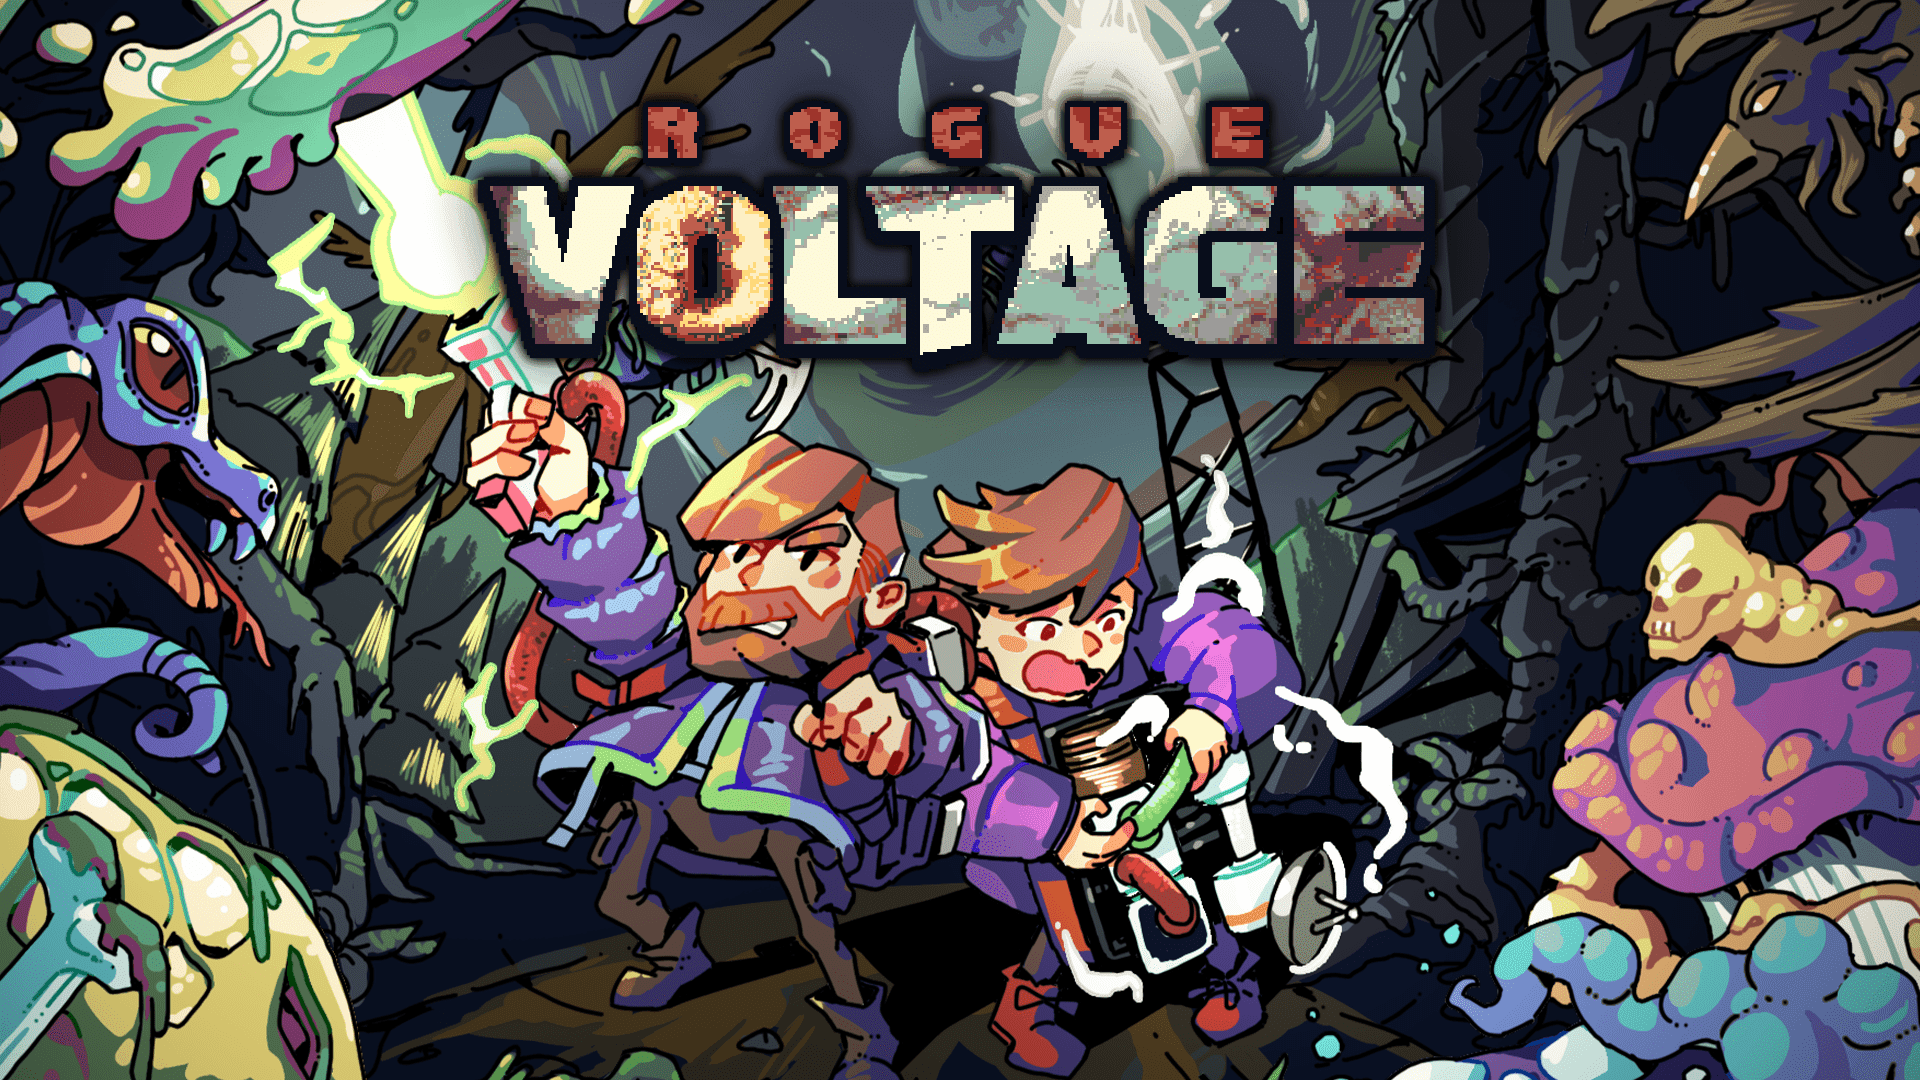 『Rogue Voltage』配信開始。モジュールに配線して連鎖反応で怪物をぶっ殺すローグライクゲーム_005